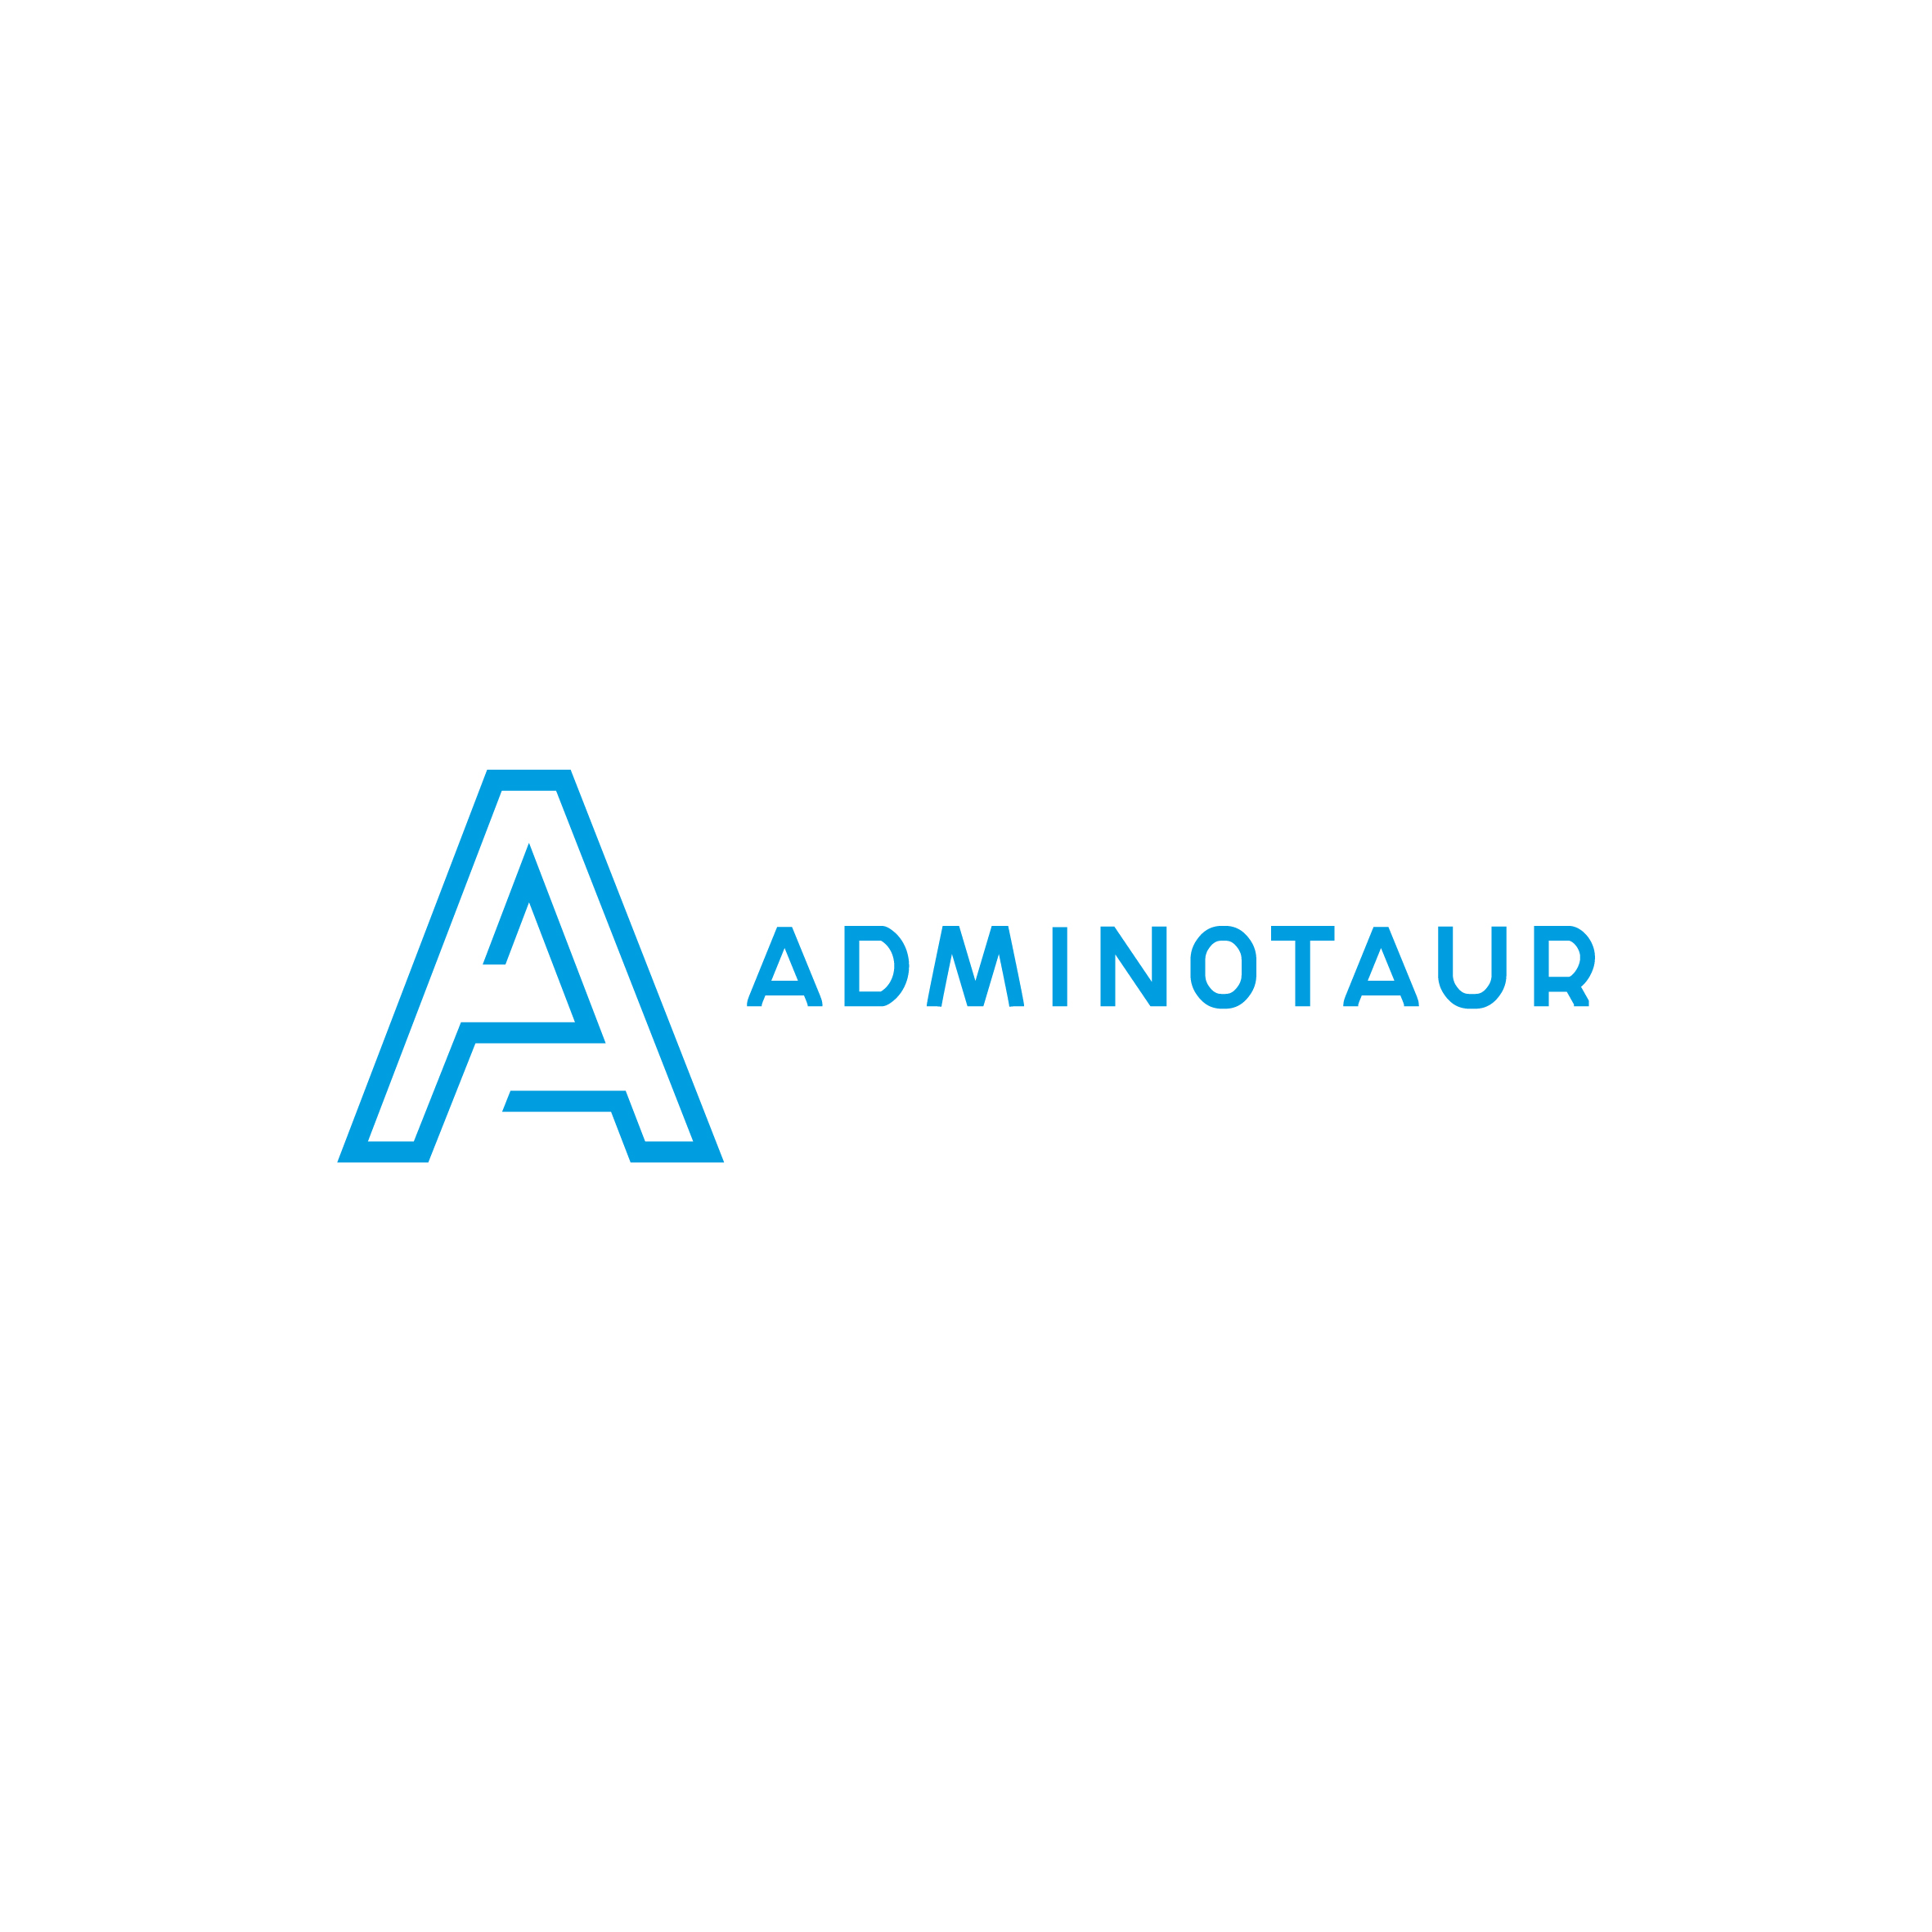 Company logo Adminotaur